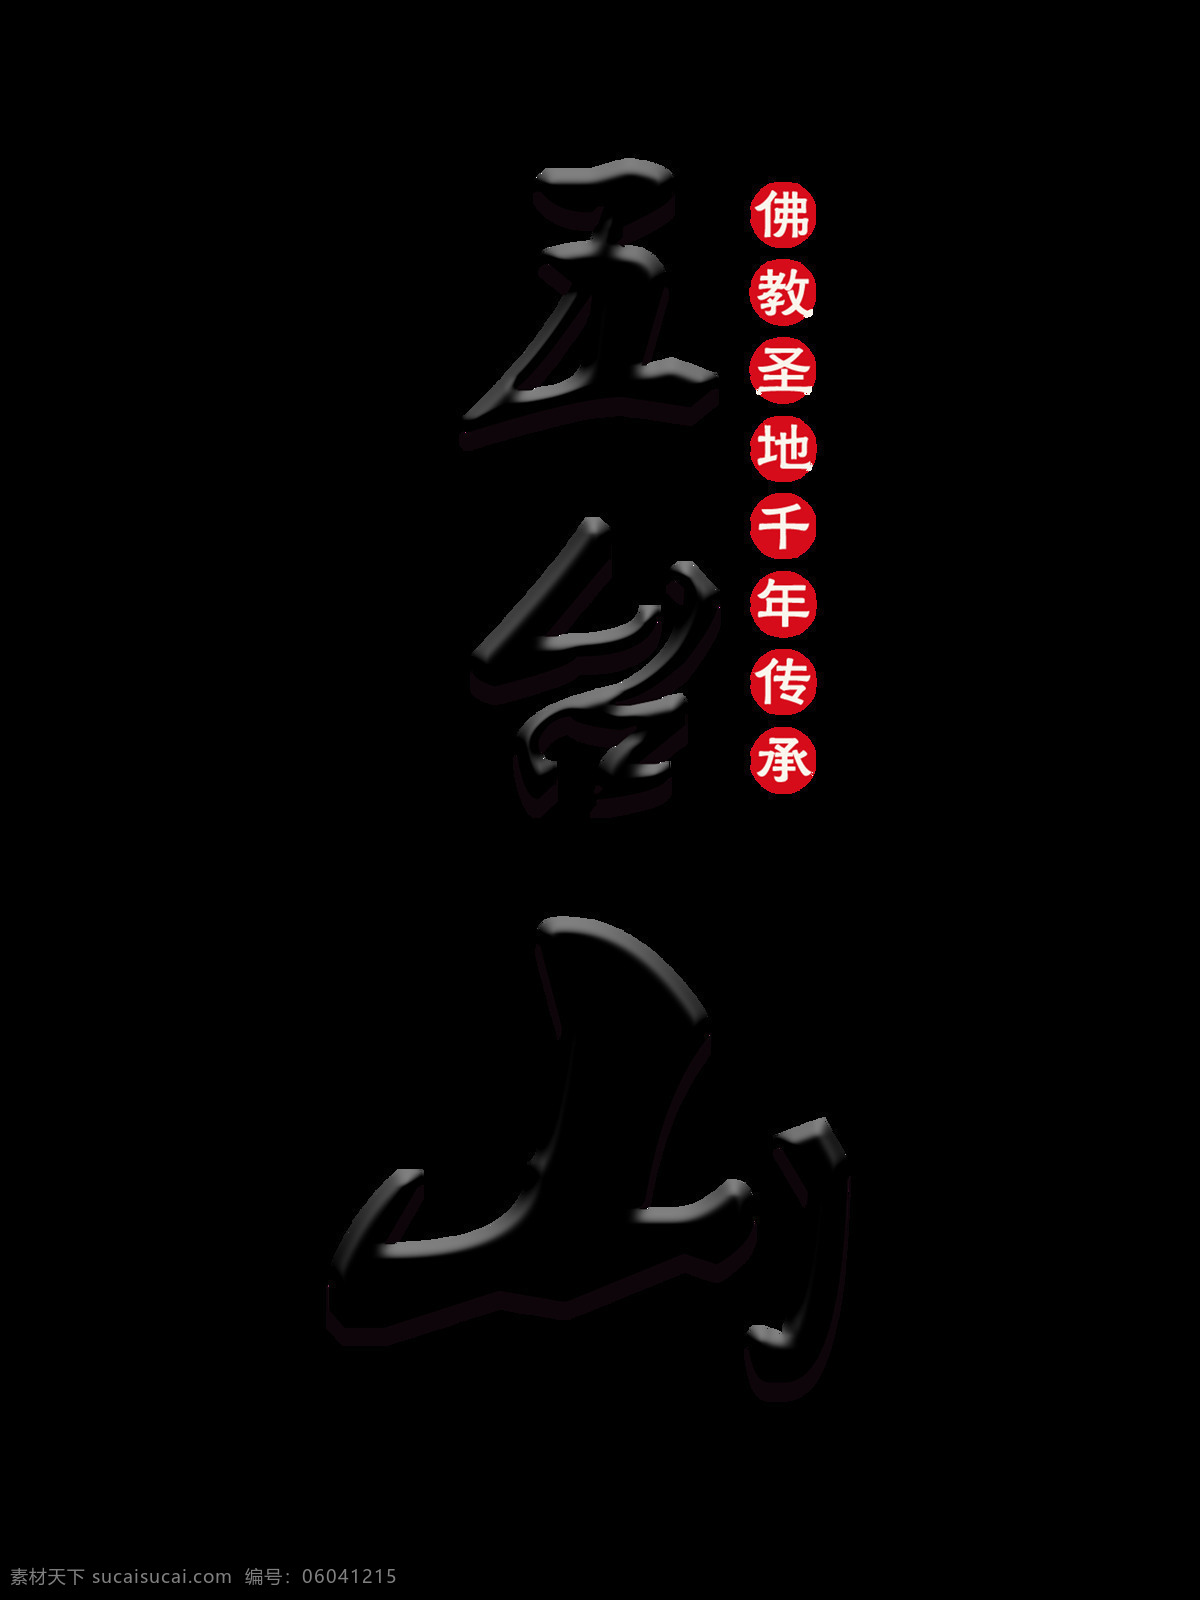 五台山 艺术 字 立体 字体 排版 佛教 艺术字 竖版 圣地 传承